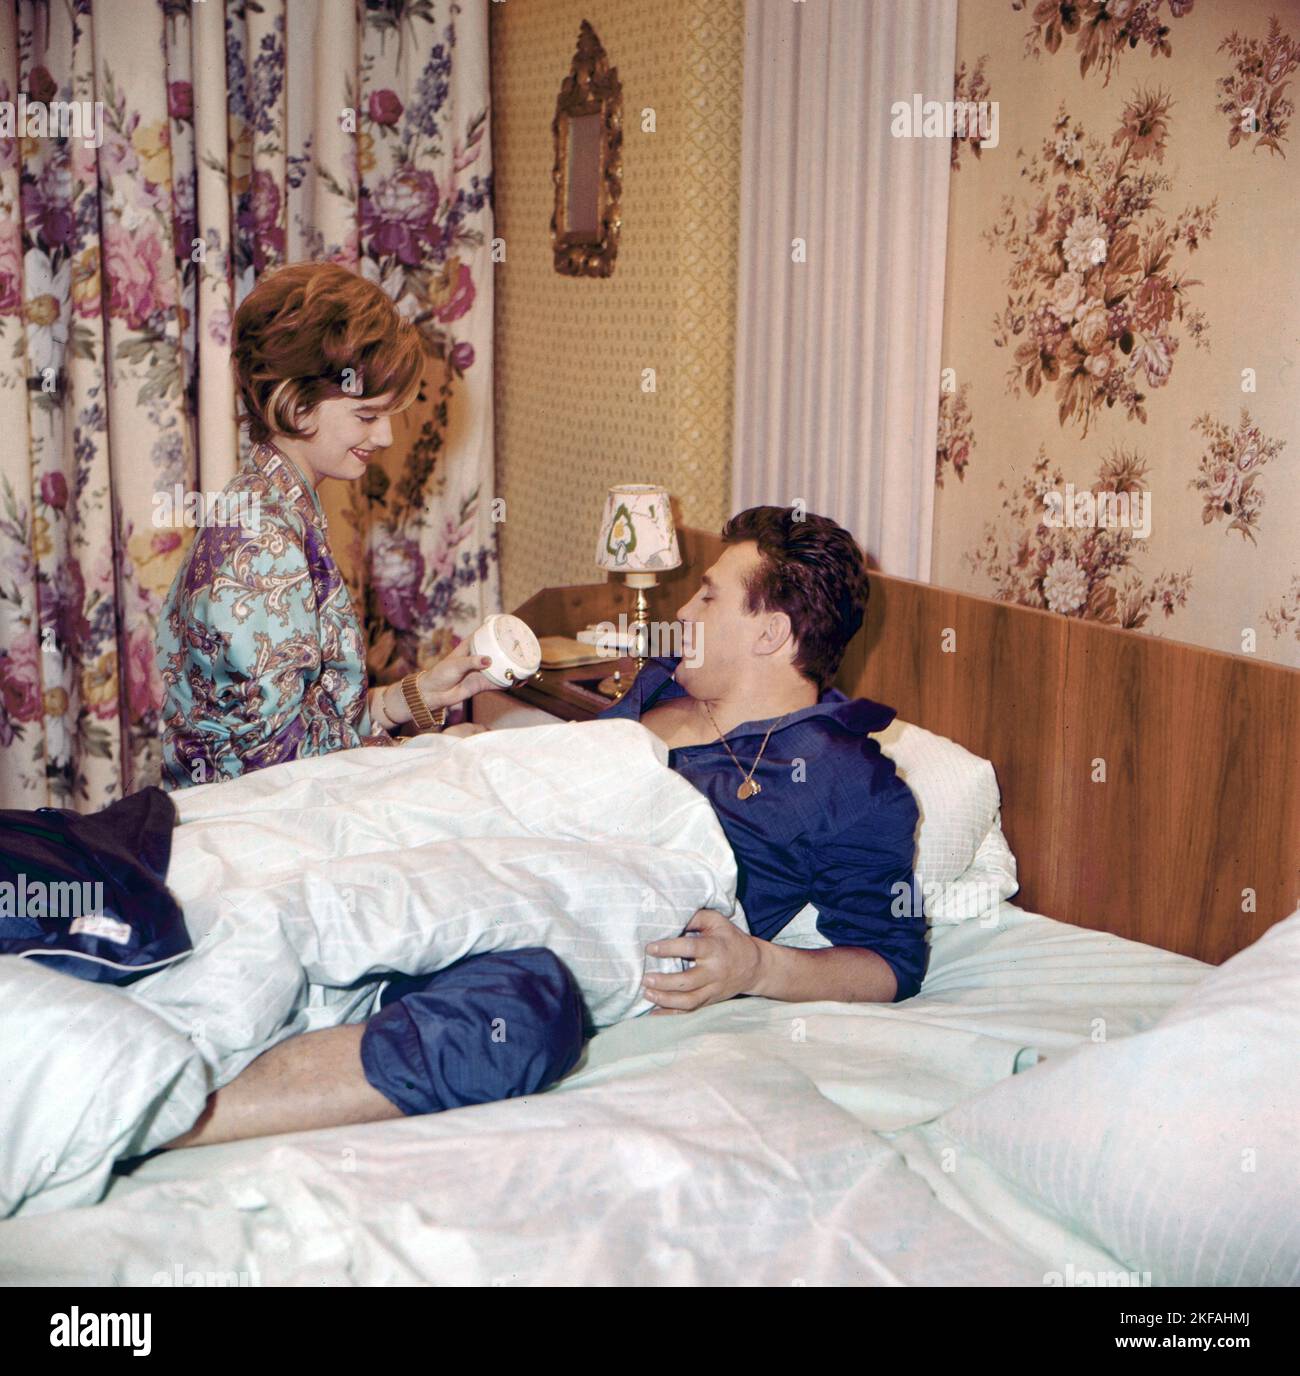 Ein Tee mit Bubi Scholz, Dokumentation über den deutschen Boxer, Deutschland um 1960, Mitwirkende: Bubi Scholz wird mortens von Ehefrau Helga geweckt Foto Stock